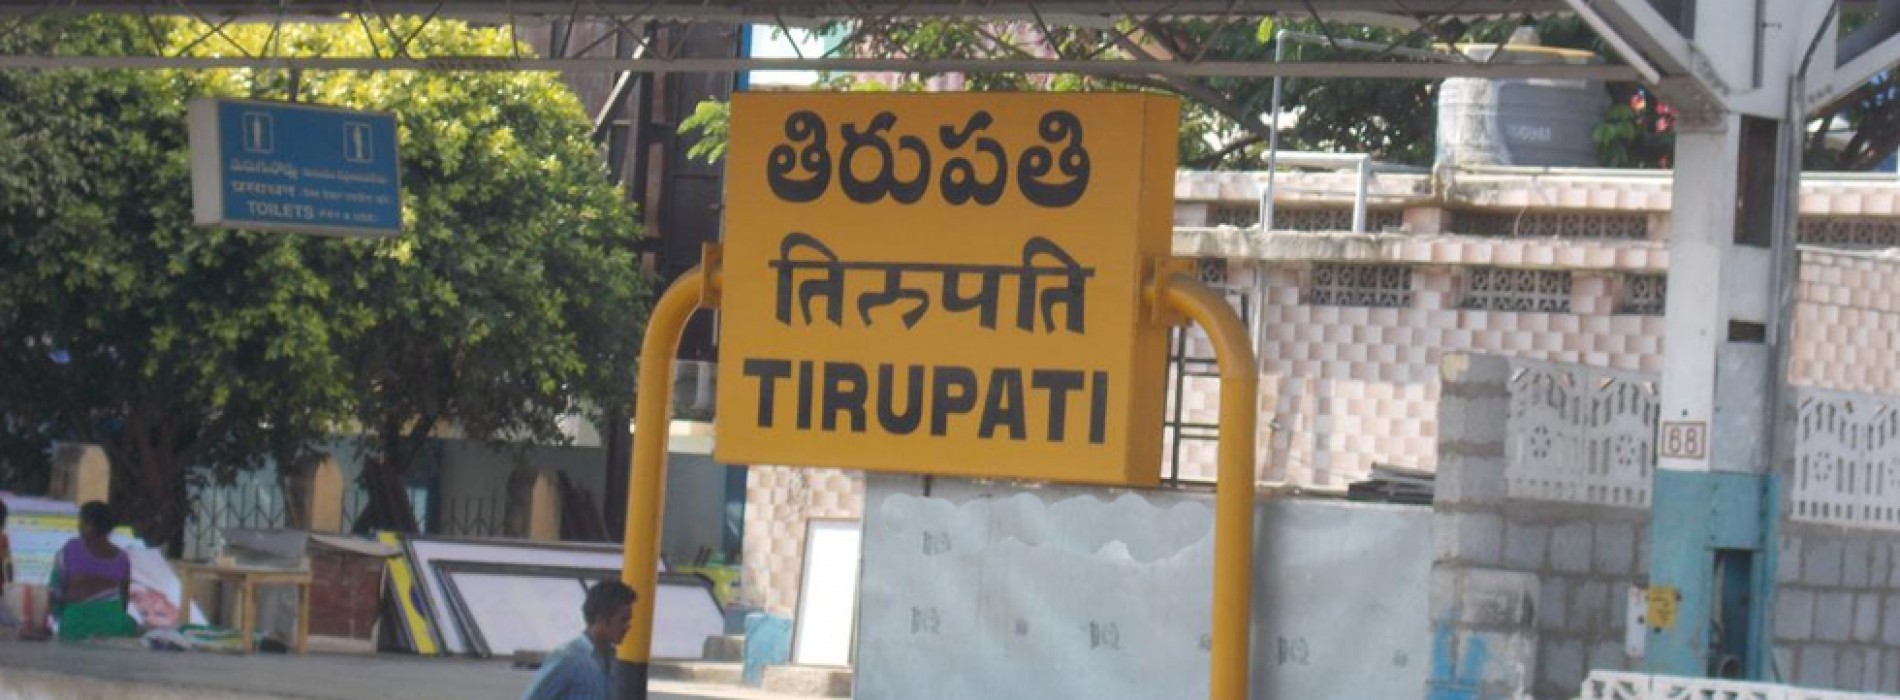 Special train to Tirupati extended till June